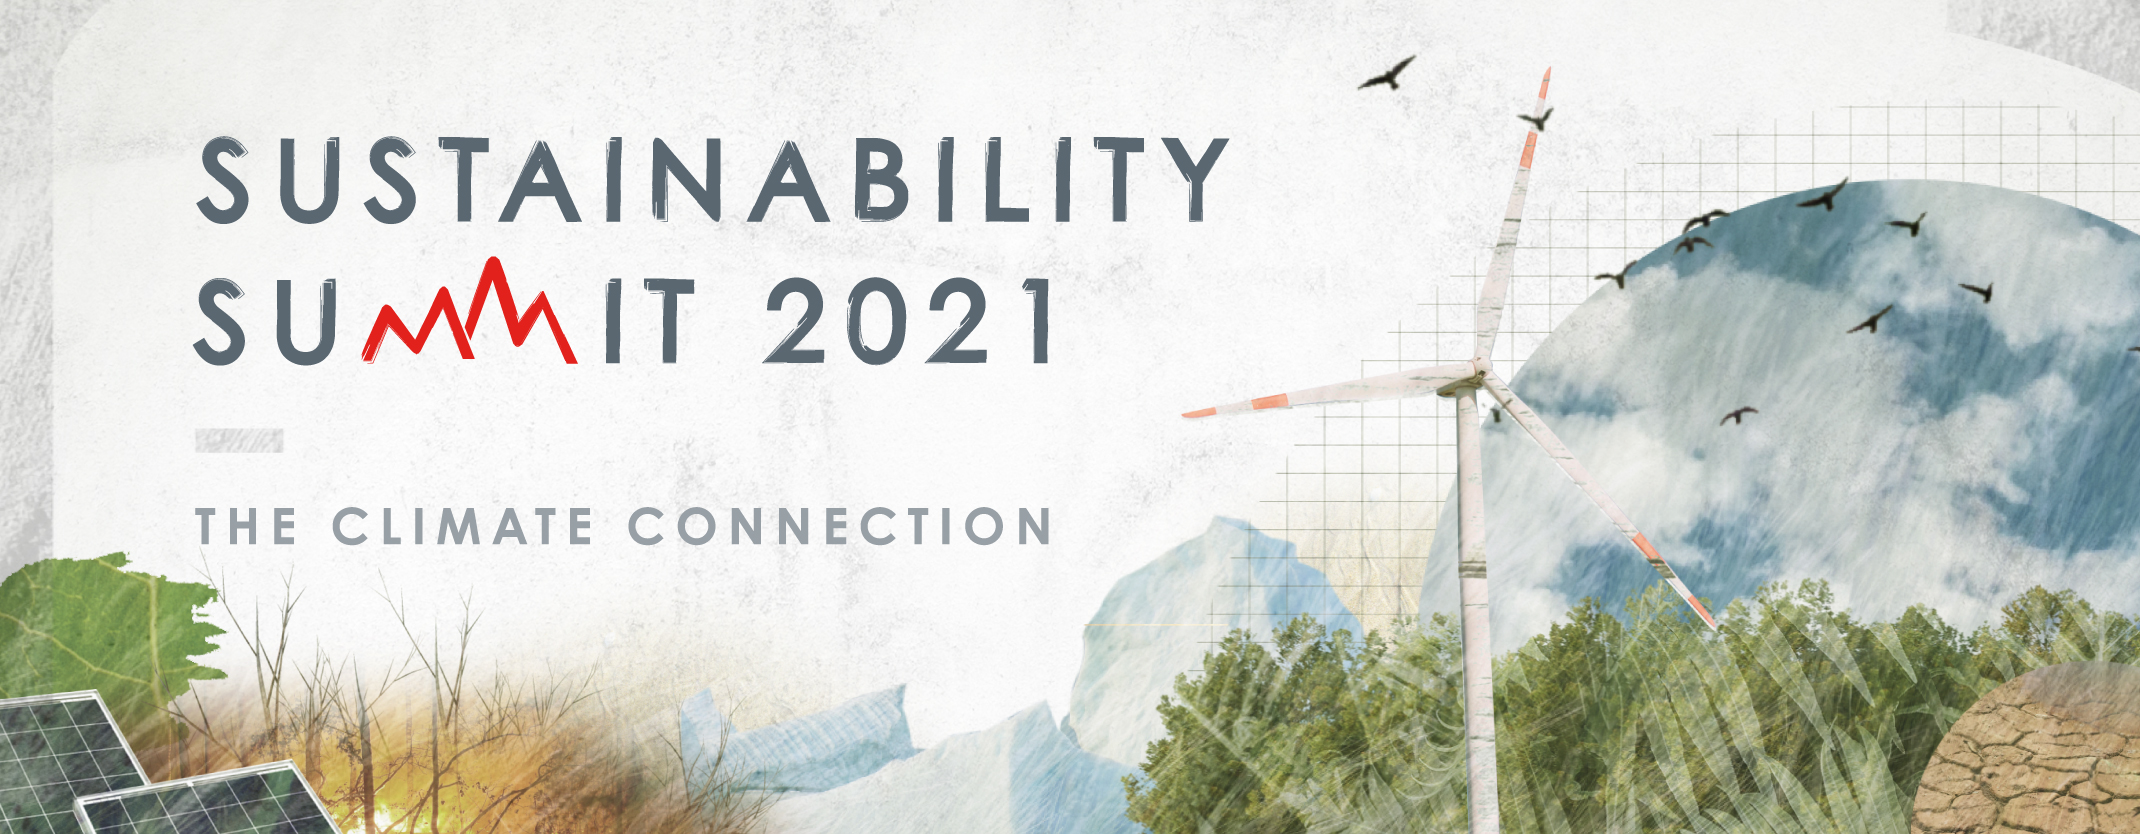 Sustainability Summit 2021